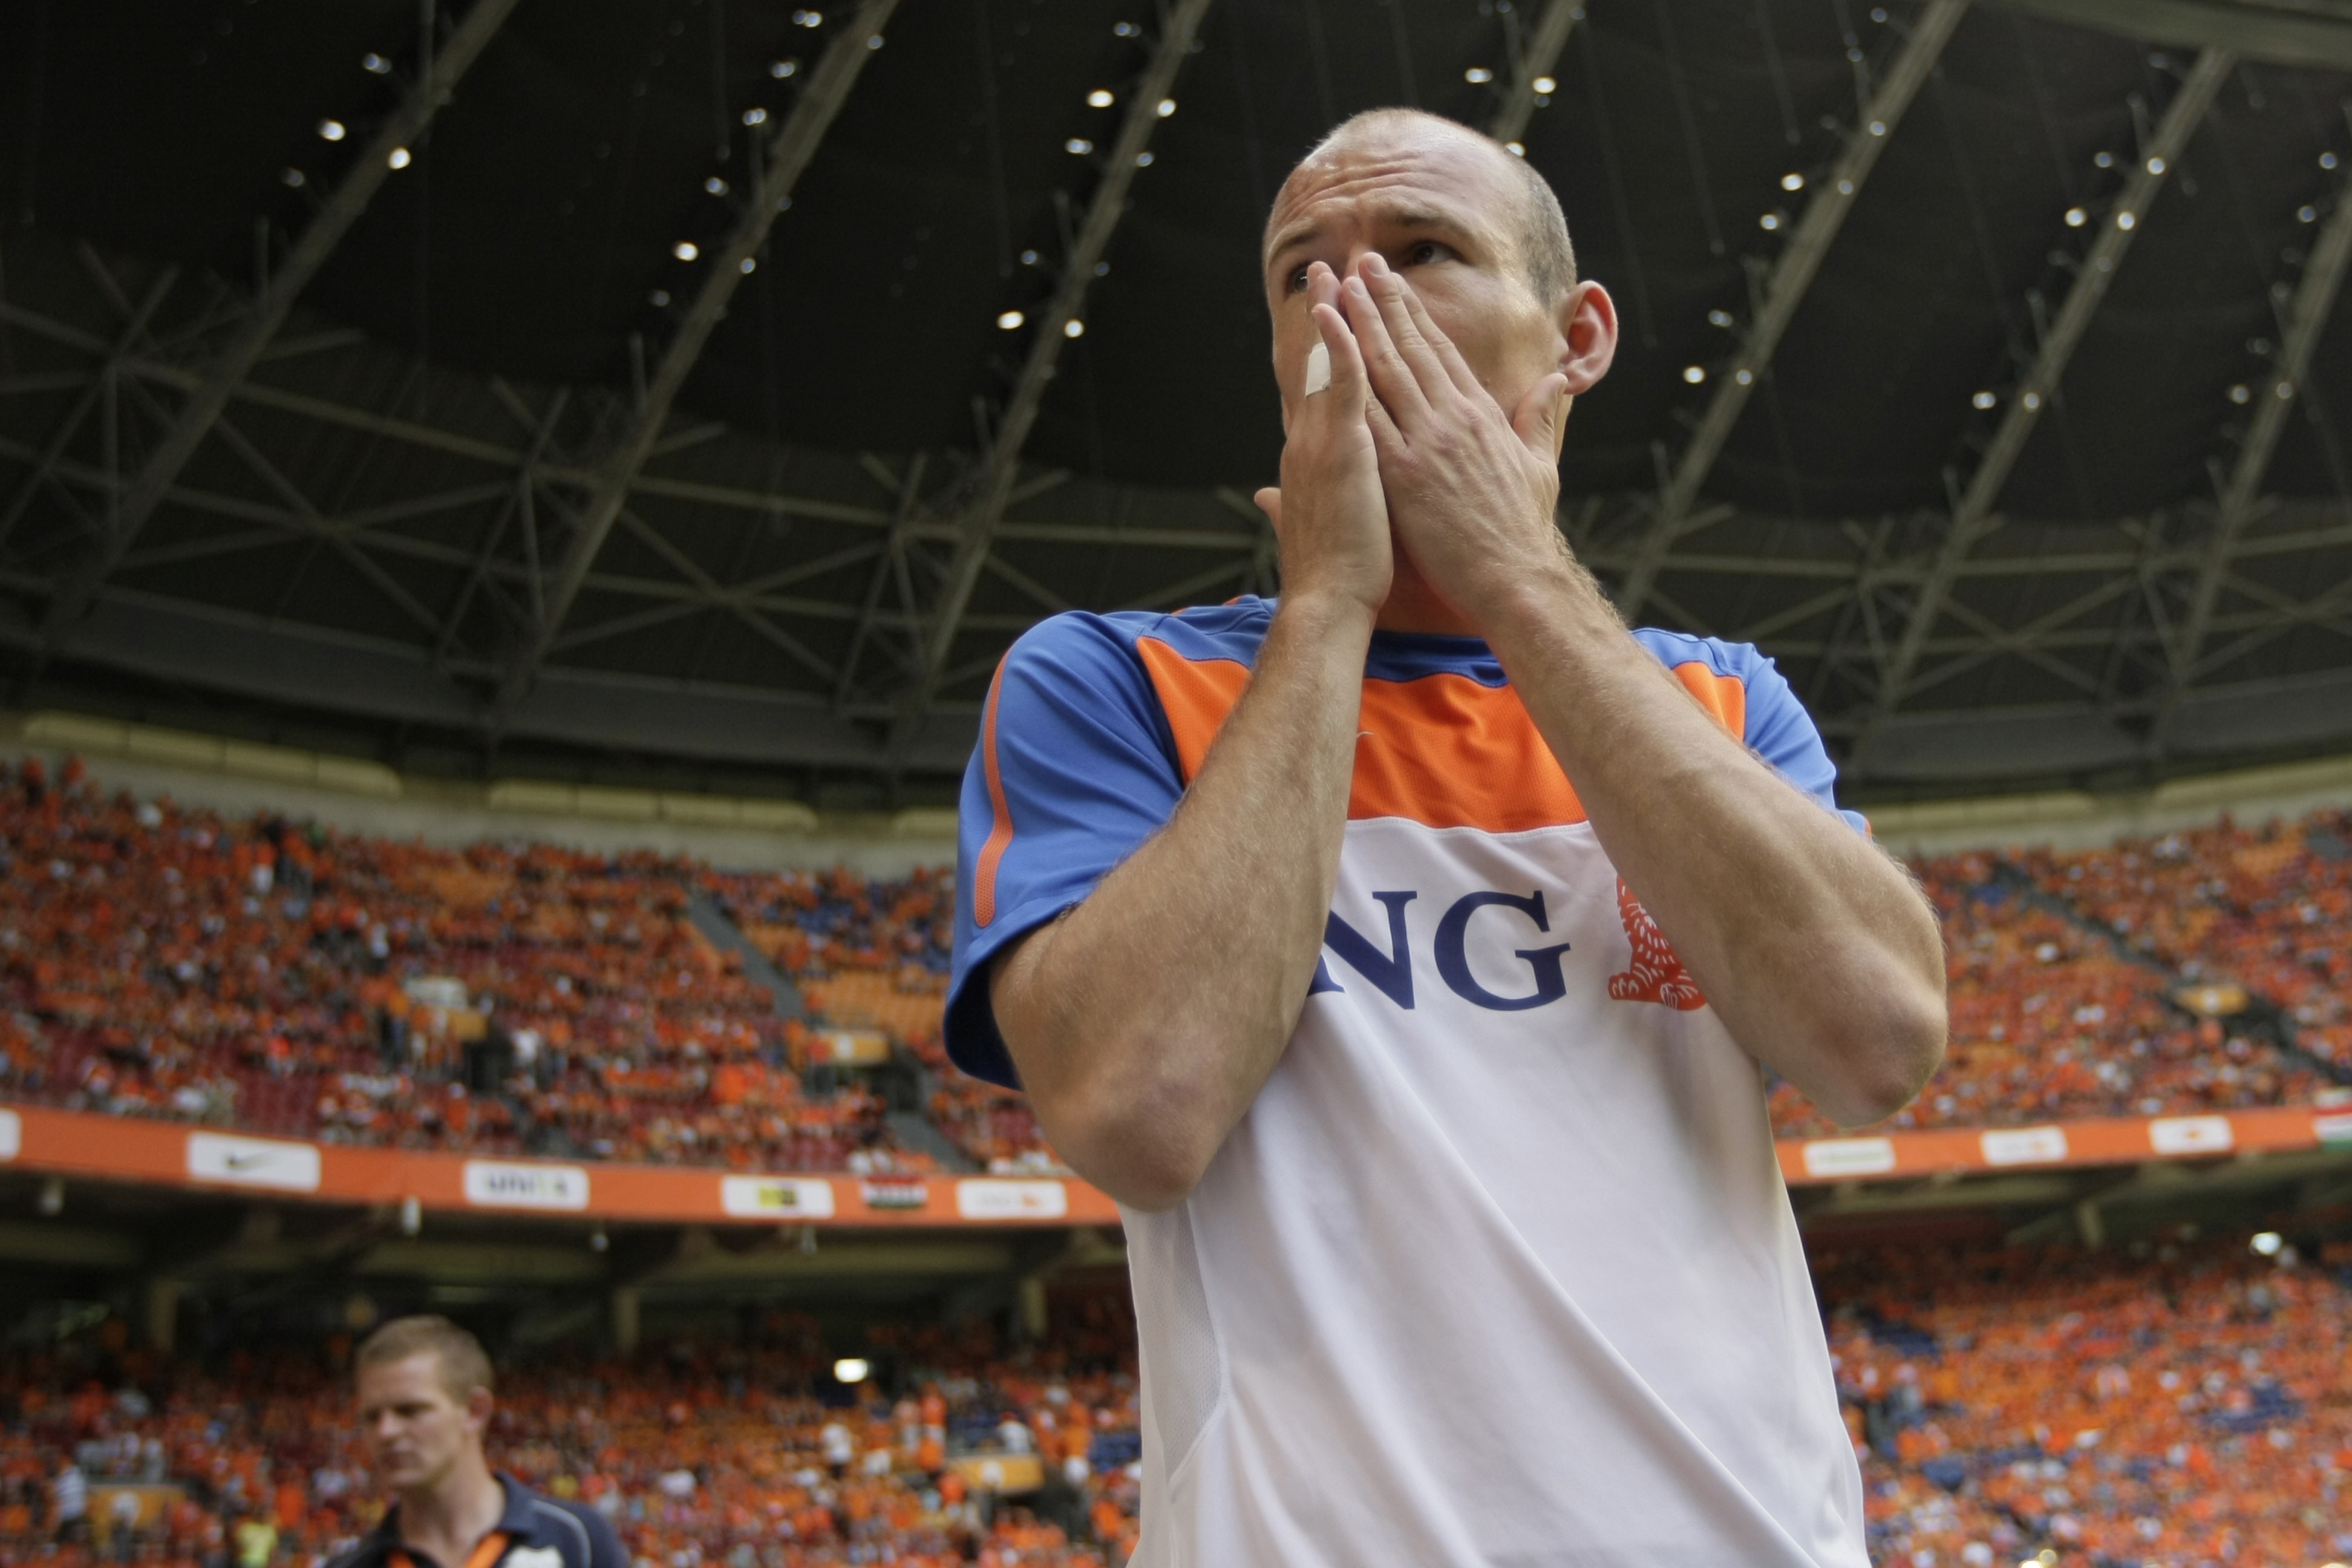 Mirakeldoktor, Holland, VM i Sydafrika, Arjen Robben